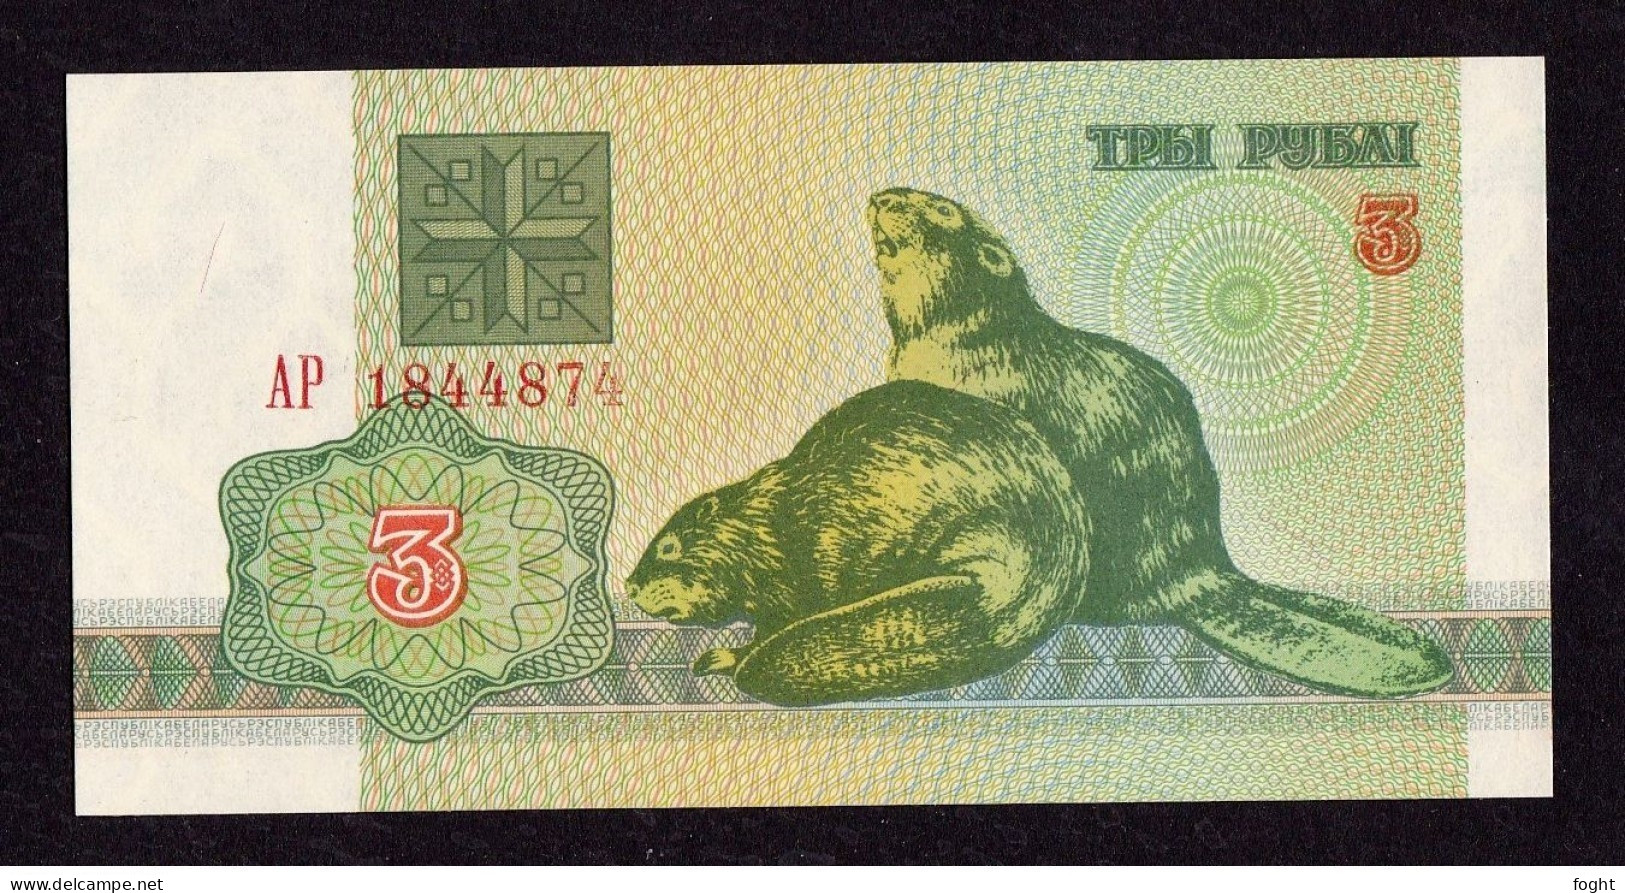 1992 АР Belarus Belarus National Bank Banknote 3 Rublei,P#3 - Belarus